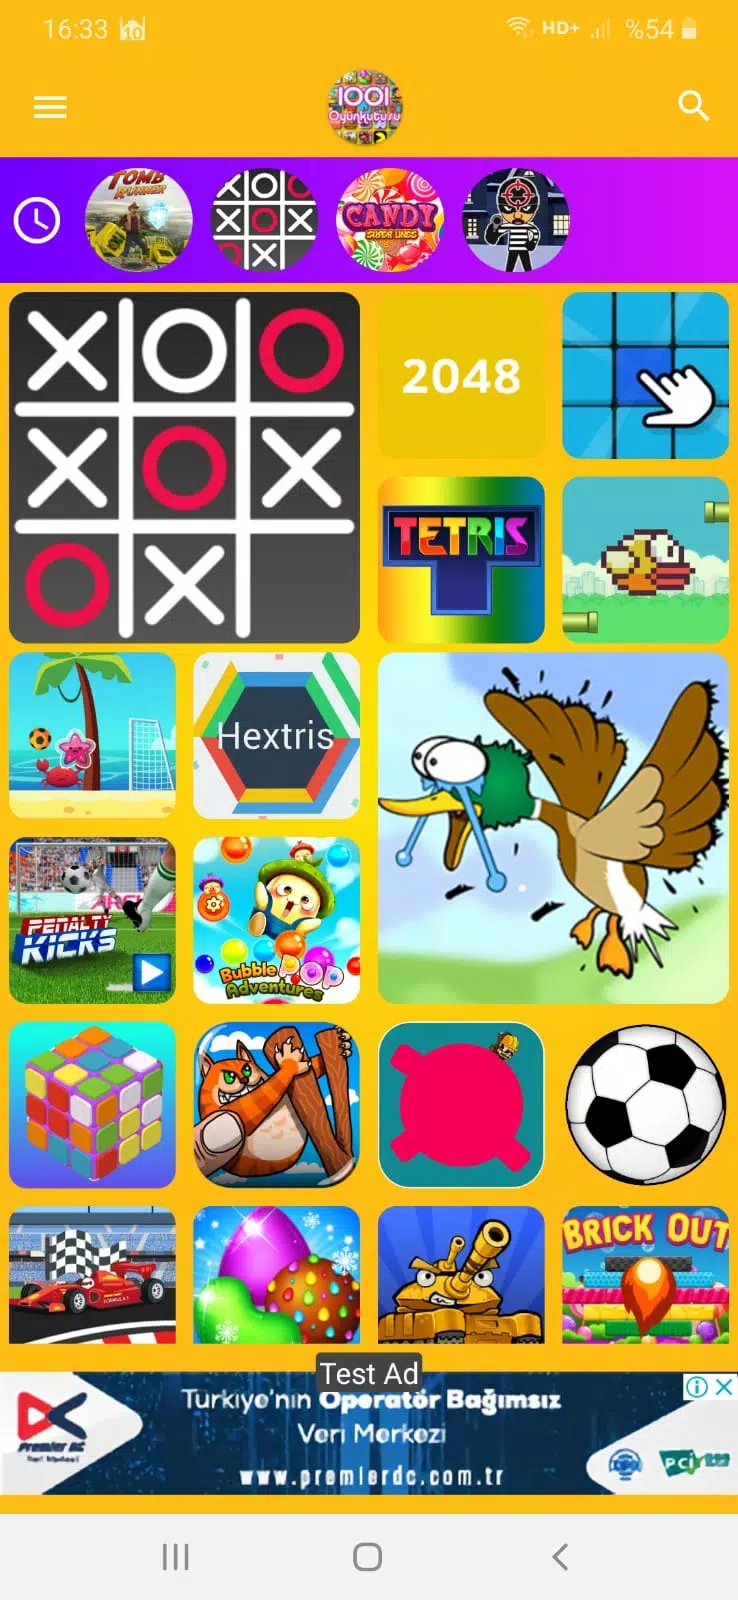 1001 Jogos APK (Android Game) - Baixar Grátis